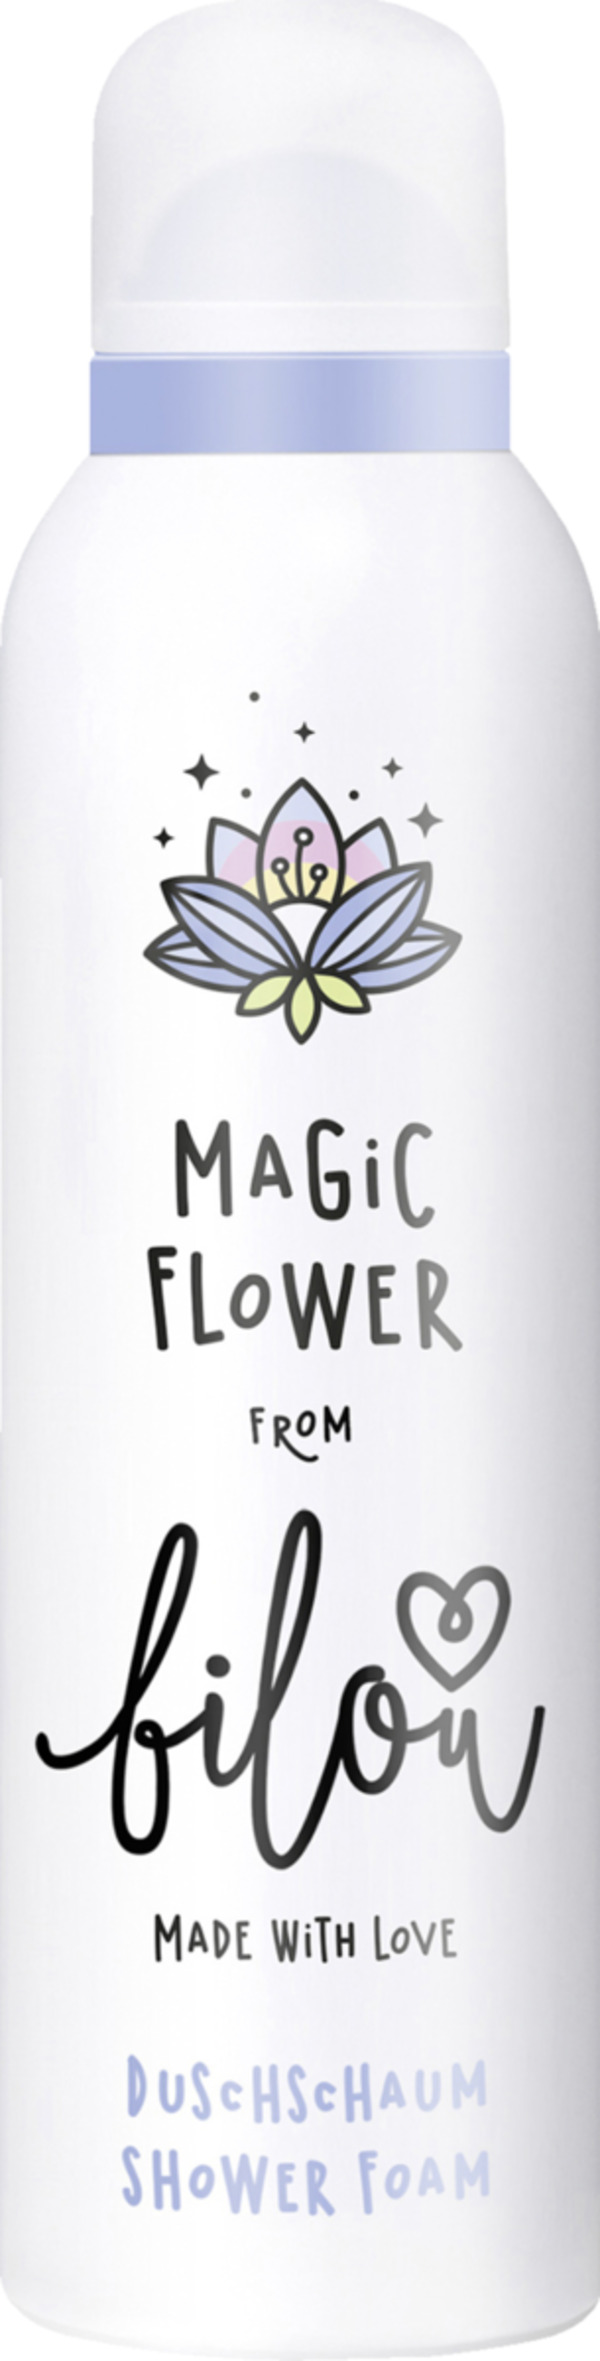 Bild 1 von bilou Duschschaum Magic Flower